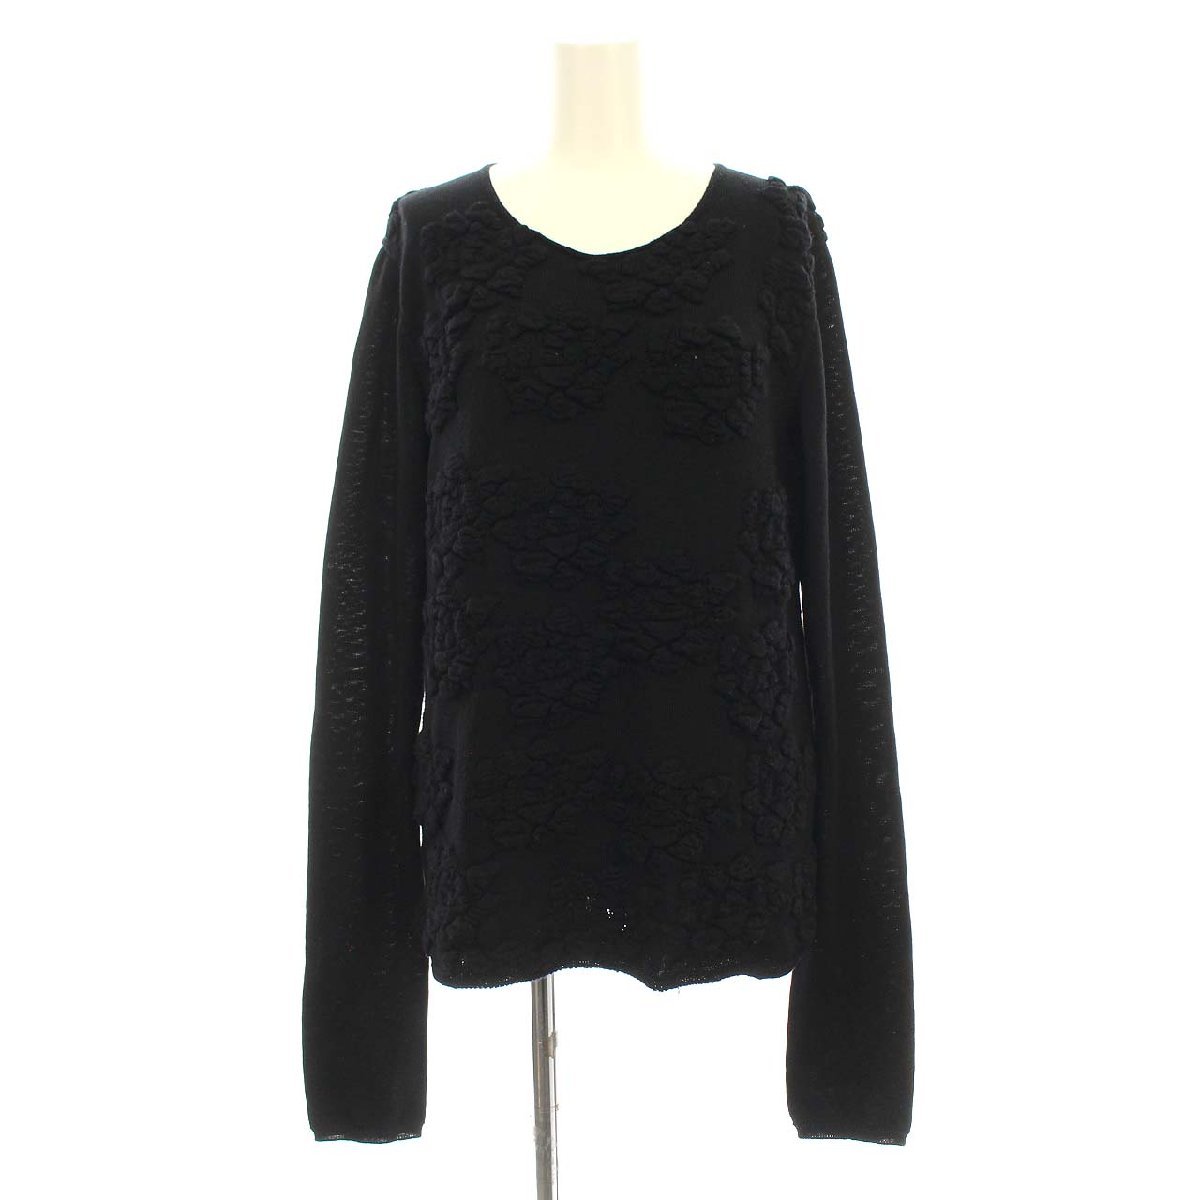 Comde Garson Comme des Garcons Ad2020 20AW вязаный свитер дизайн с длинным рукавом S черный черный GF-N008 /☆ K Ladies